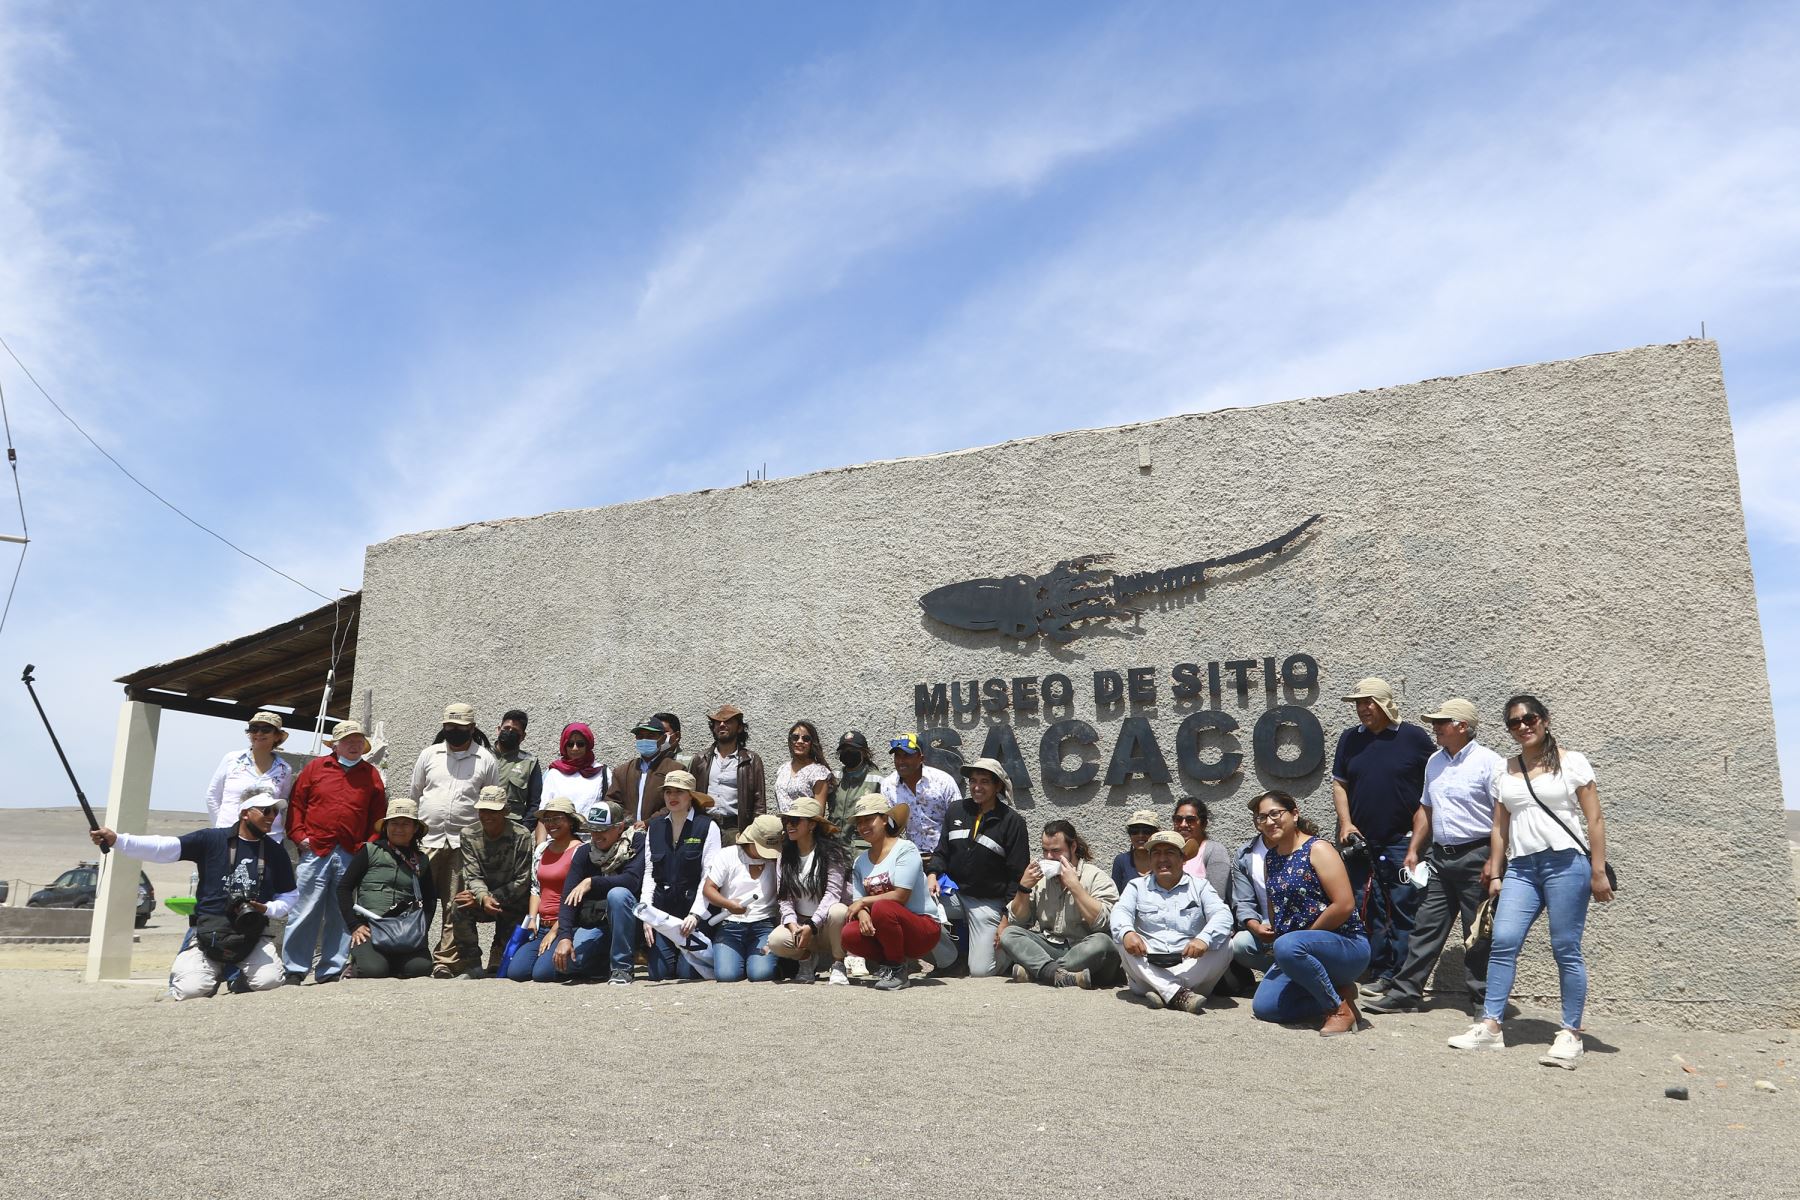 Luego de tres años de intenso trabajo, fue reinaugurado el Museo de Sitio Sacaco, en el distrito de Bella Unión, región Arequipa, que preserva y difunde la riqueza paleontológica del desierto. Foto: ANDINA/Braian Reyna